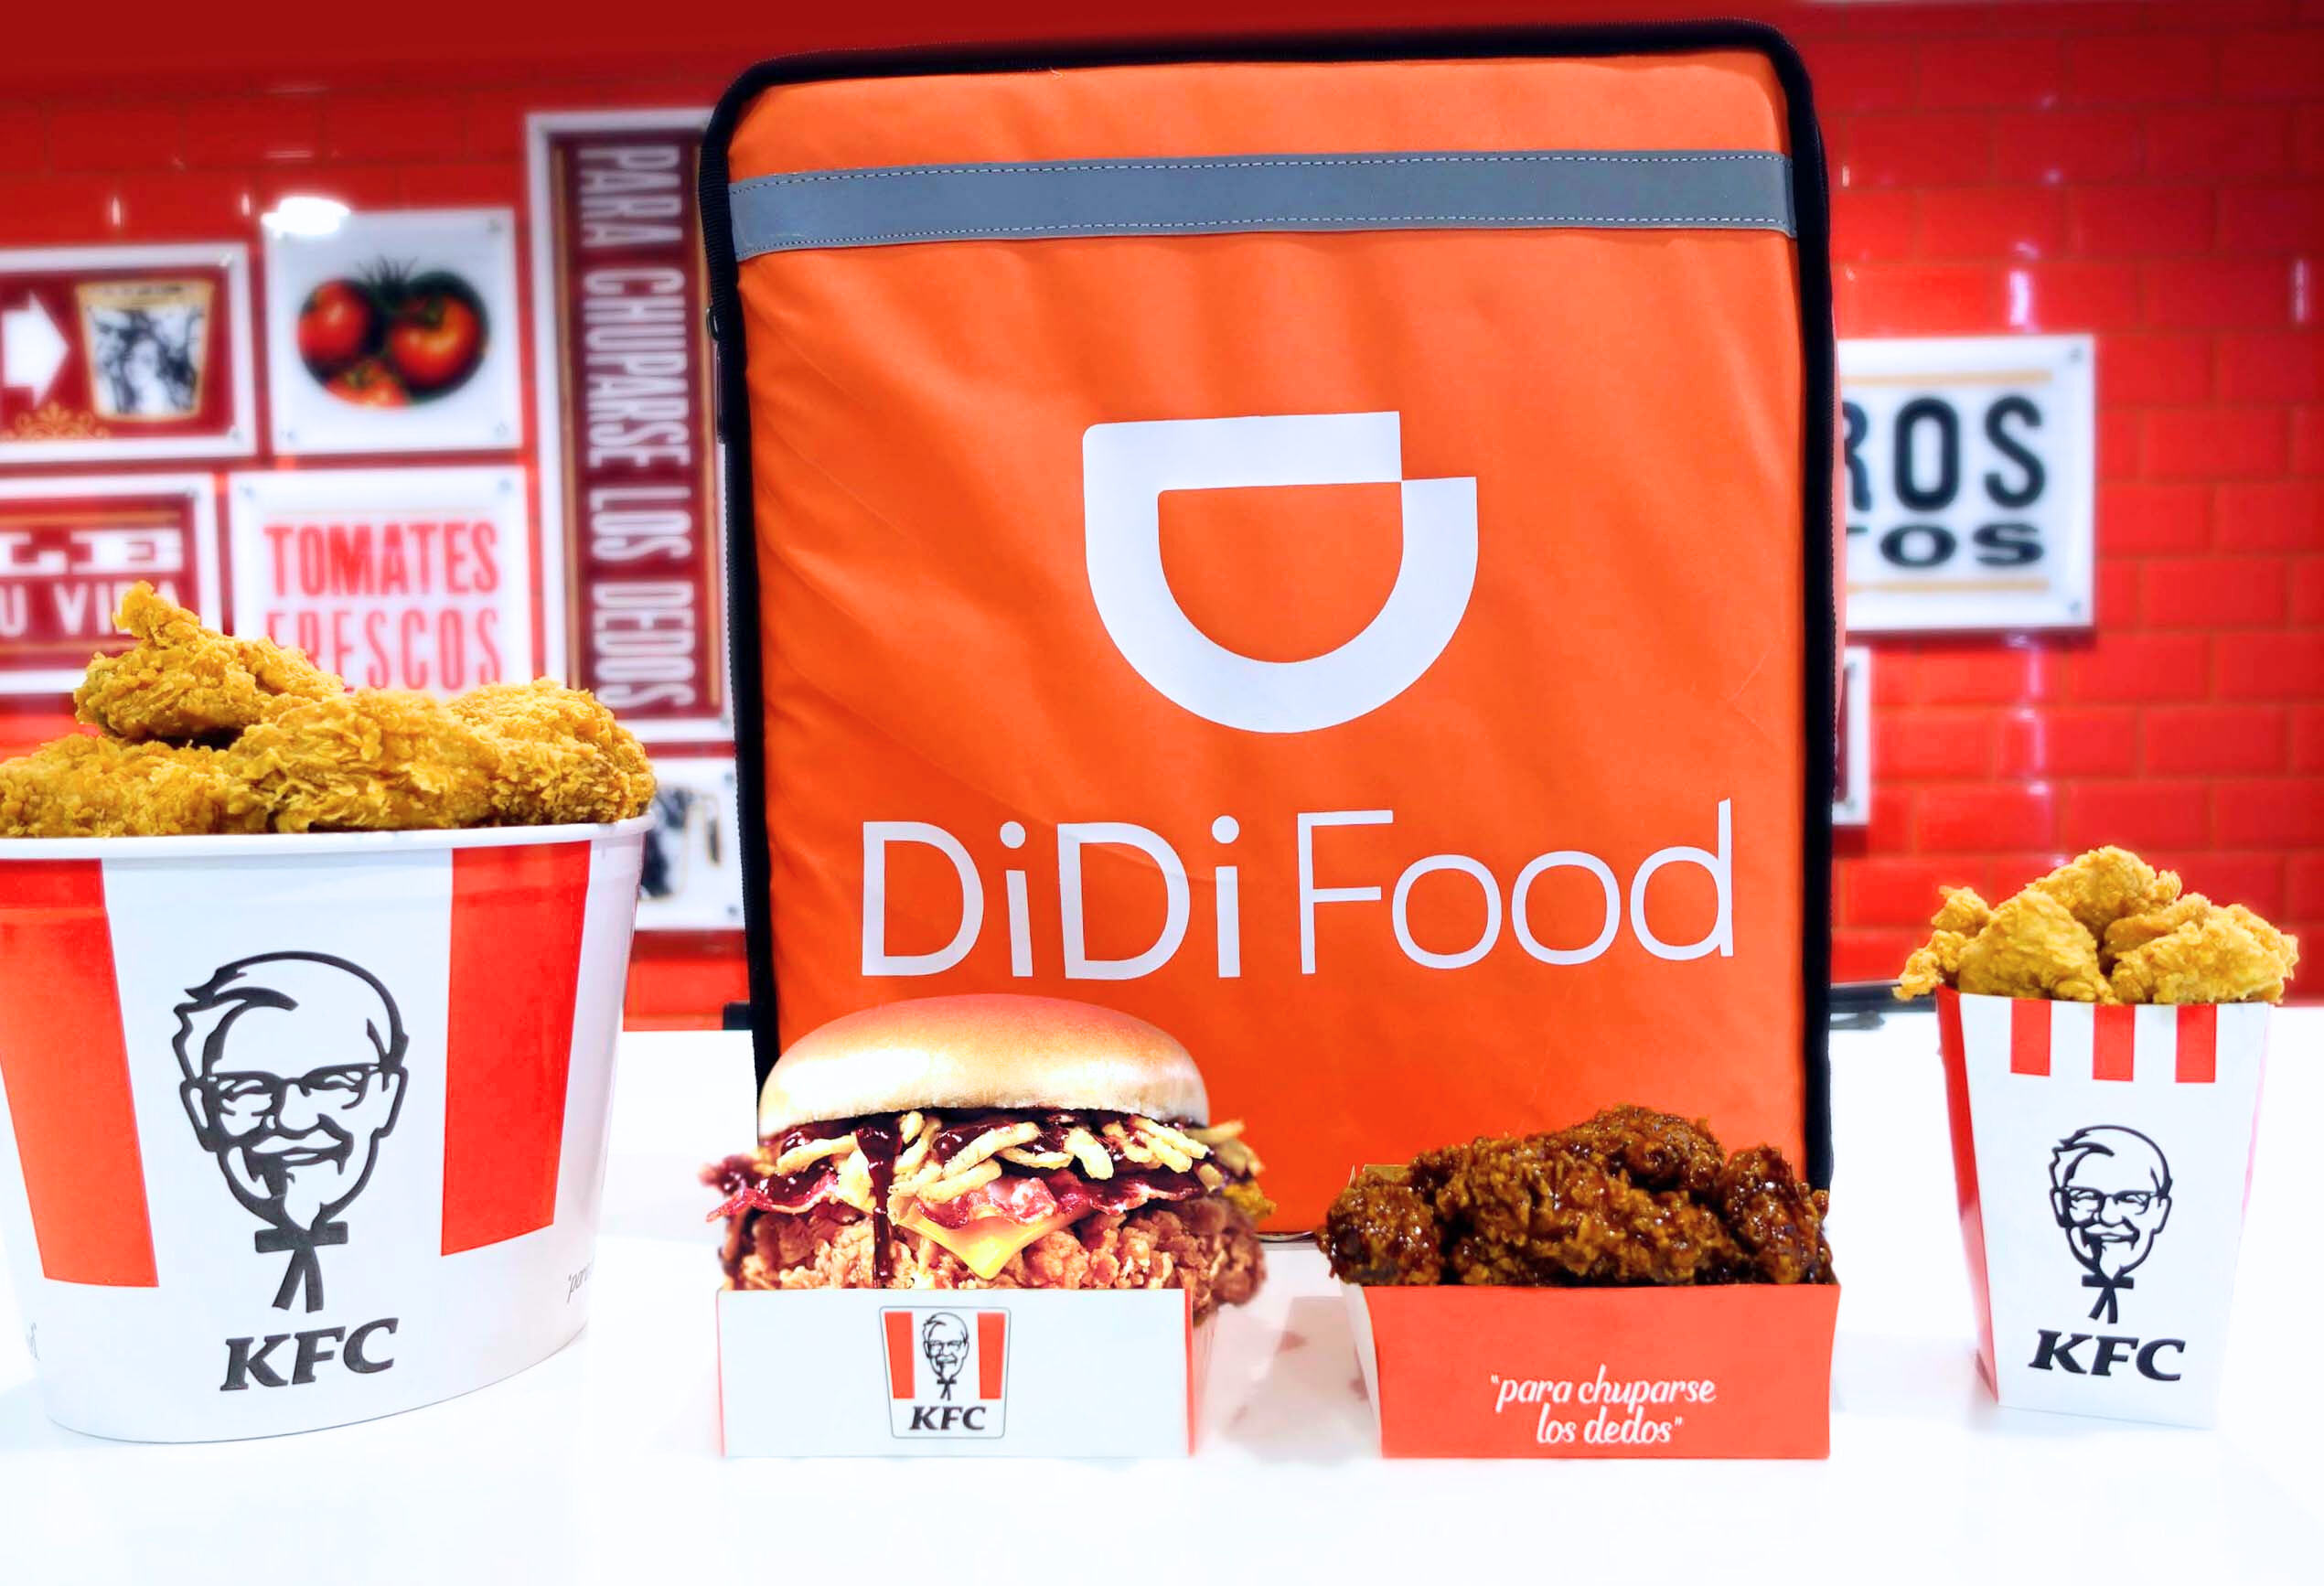 KFC ahora está disponible para usuarios de DiDi Food